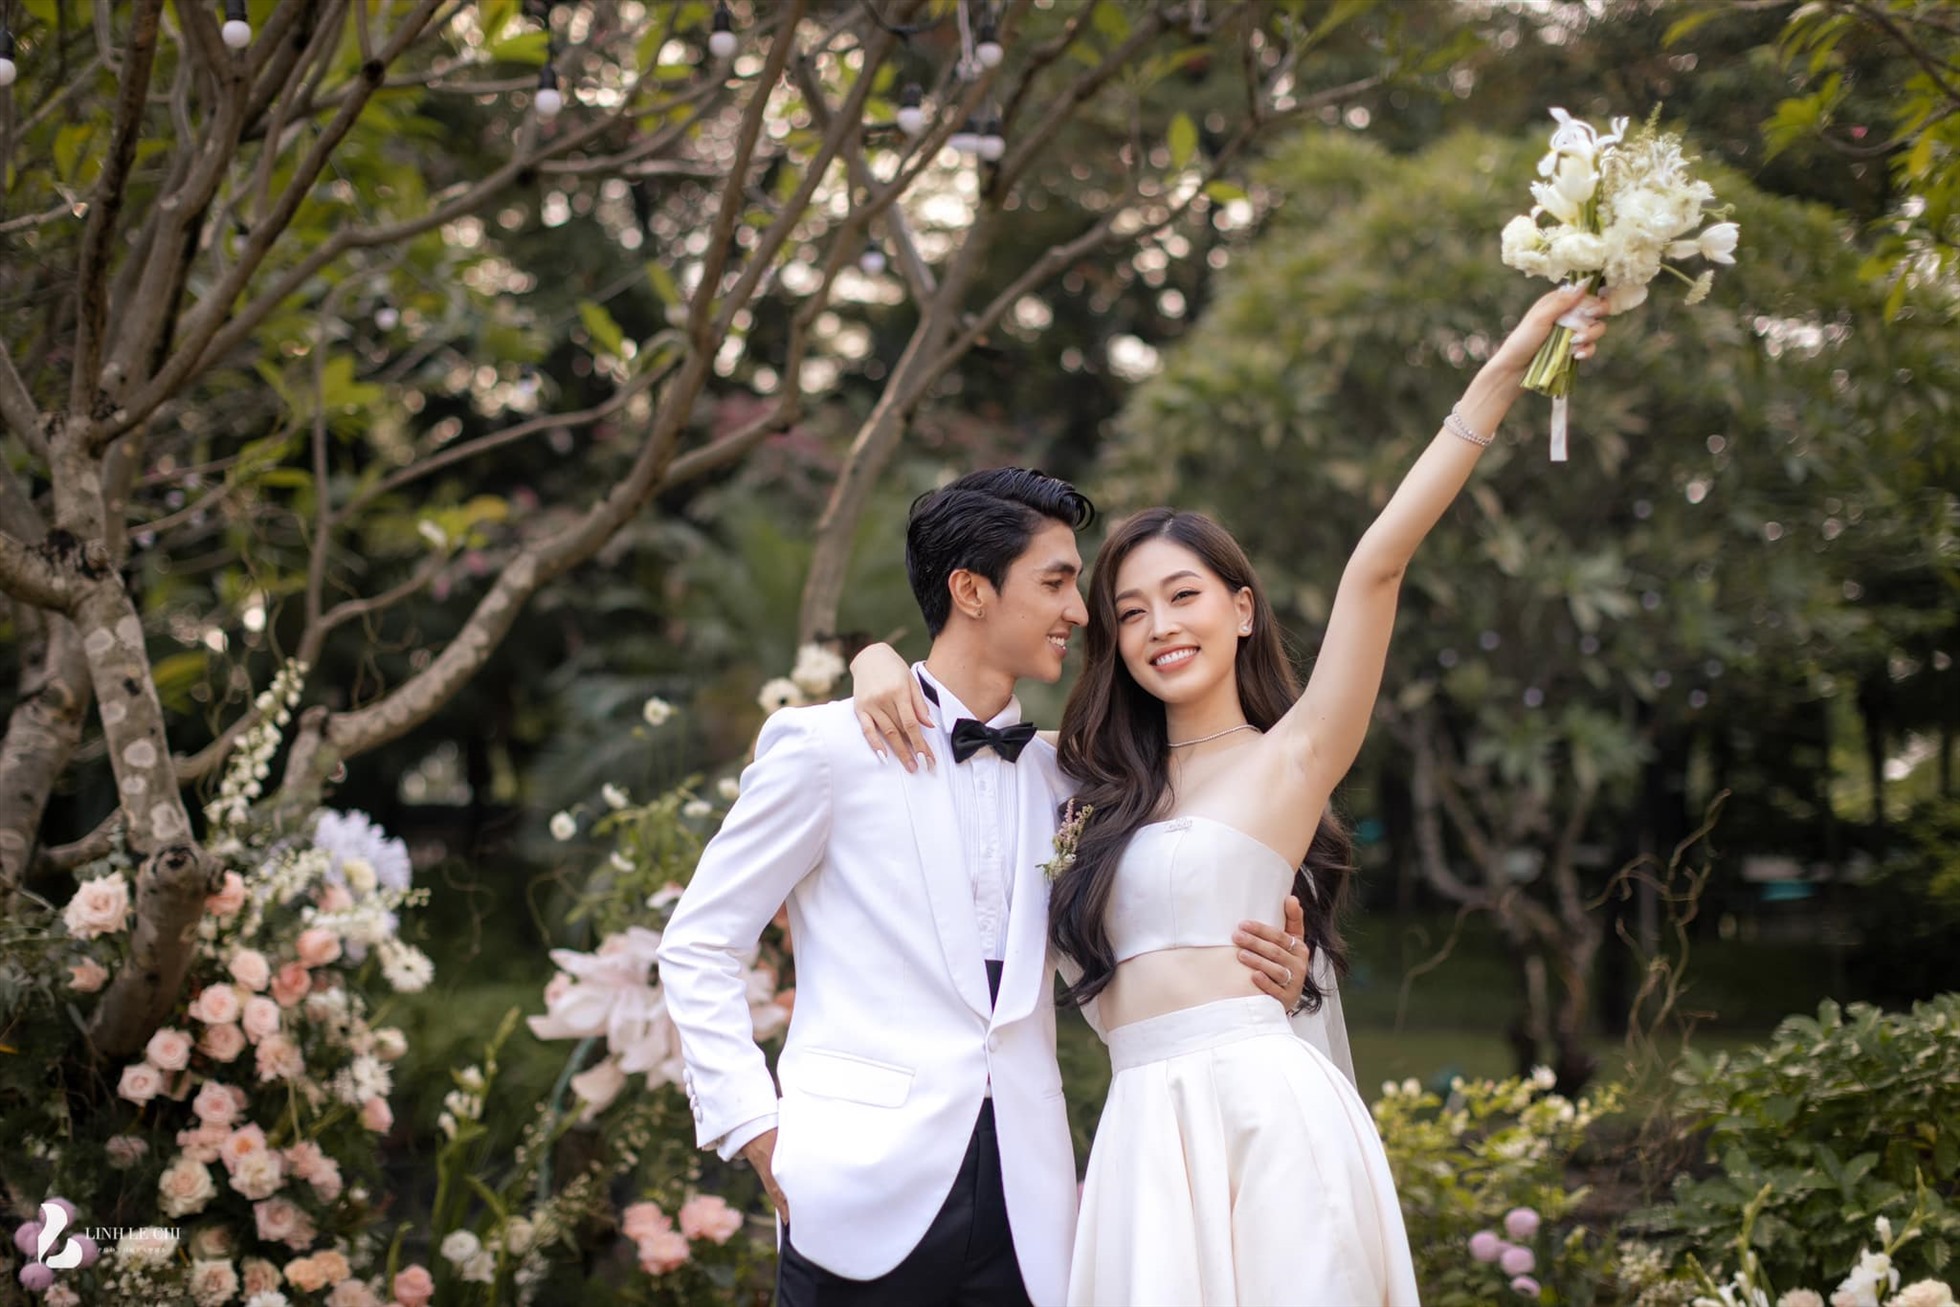 Ngày 21.10, đám cưới Á hậu Phương Nga và Bình An đã được tổ chức tại một khách sạn sang trọng ở Hà Nội. Cặp đôi đã có bữa tiệc riêng tư trước khi vào tiệc chính đãi khách vào buổi tối. Ảnh: Linh Lê Chí.